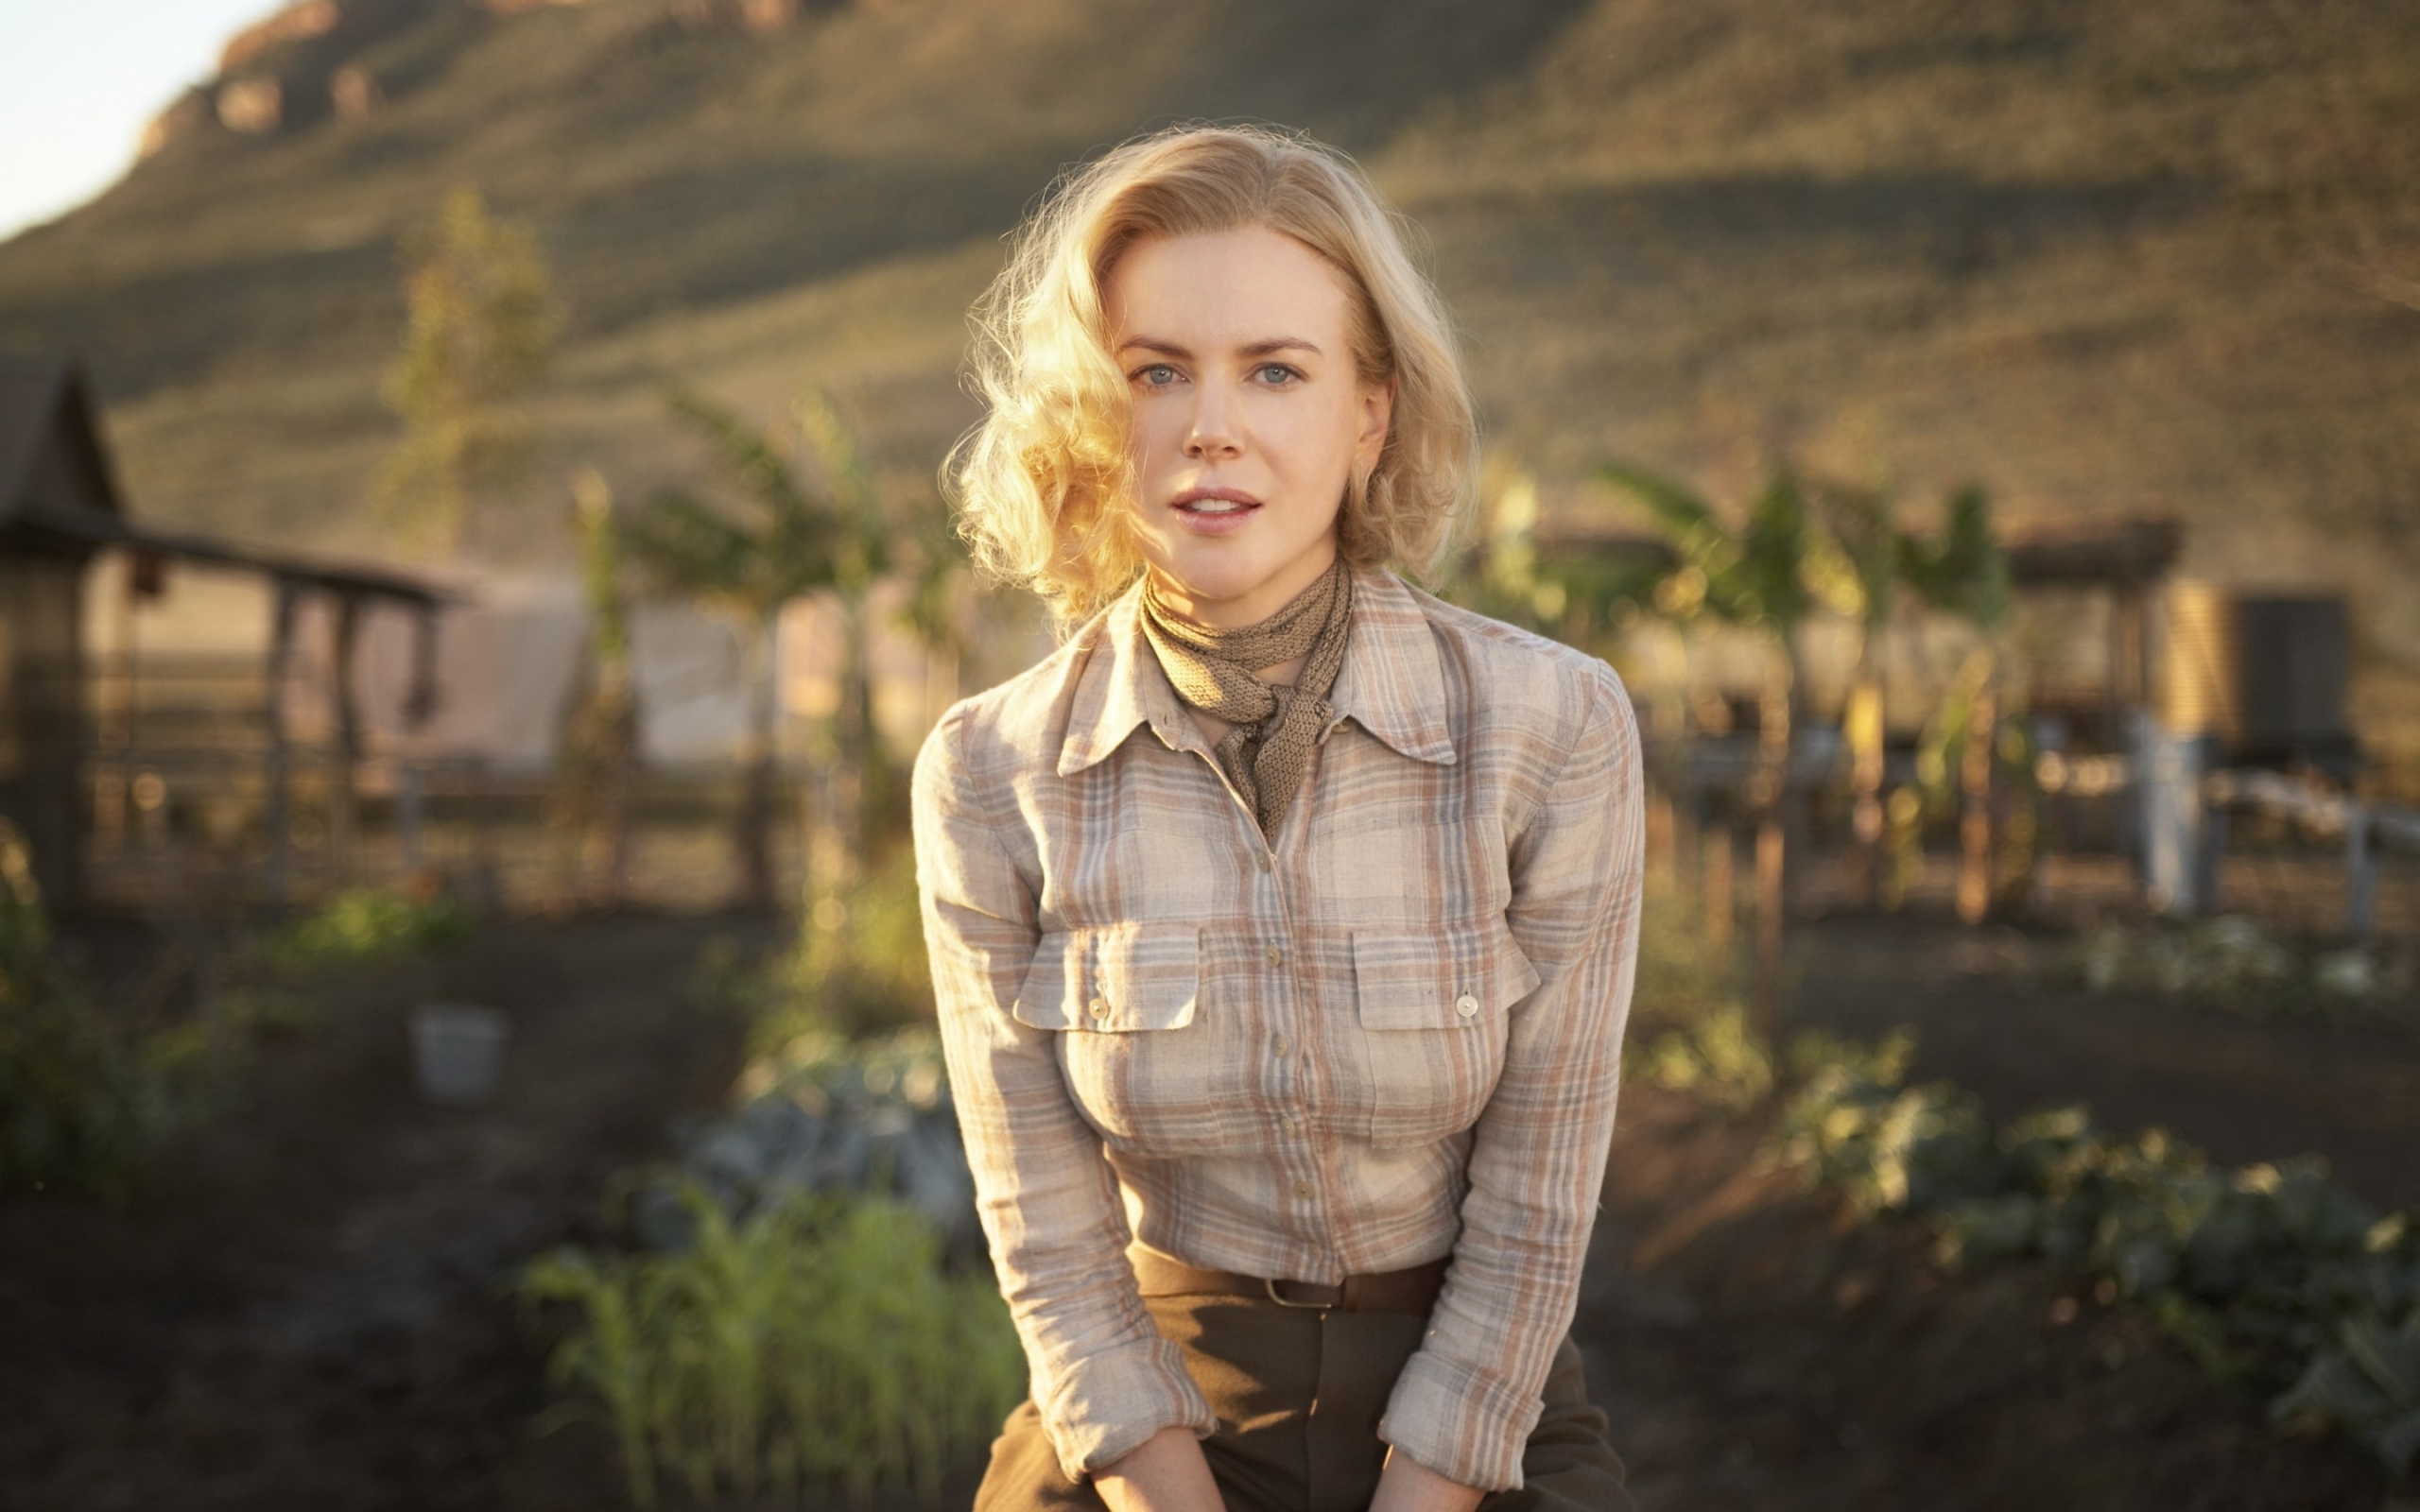 Nicole Kidman Australian Actress for 2560 x 1600 widescreen resolution